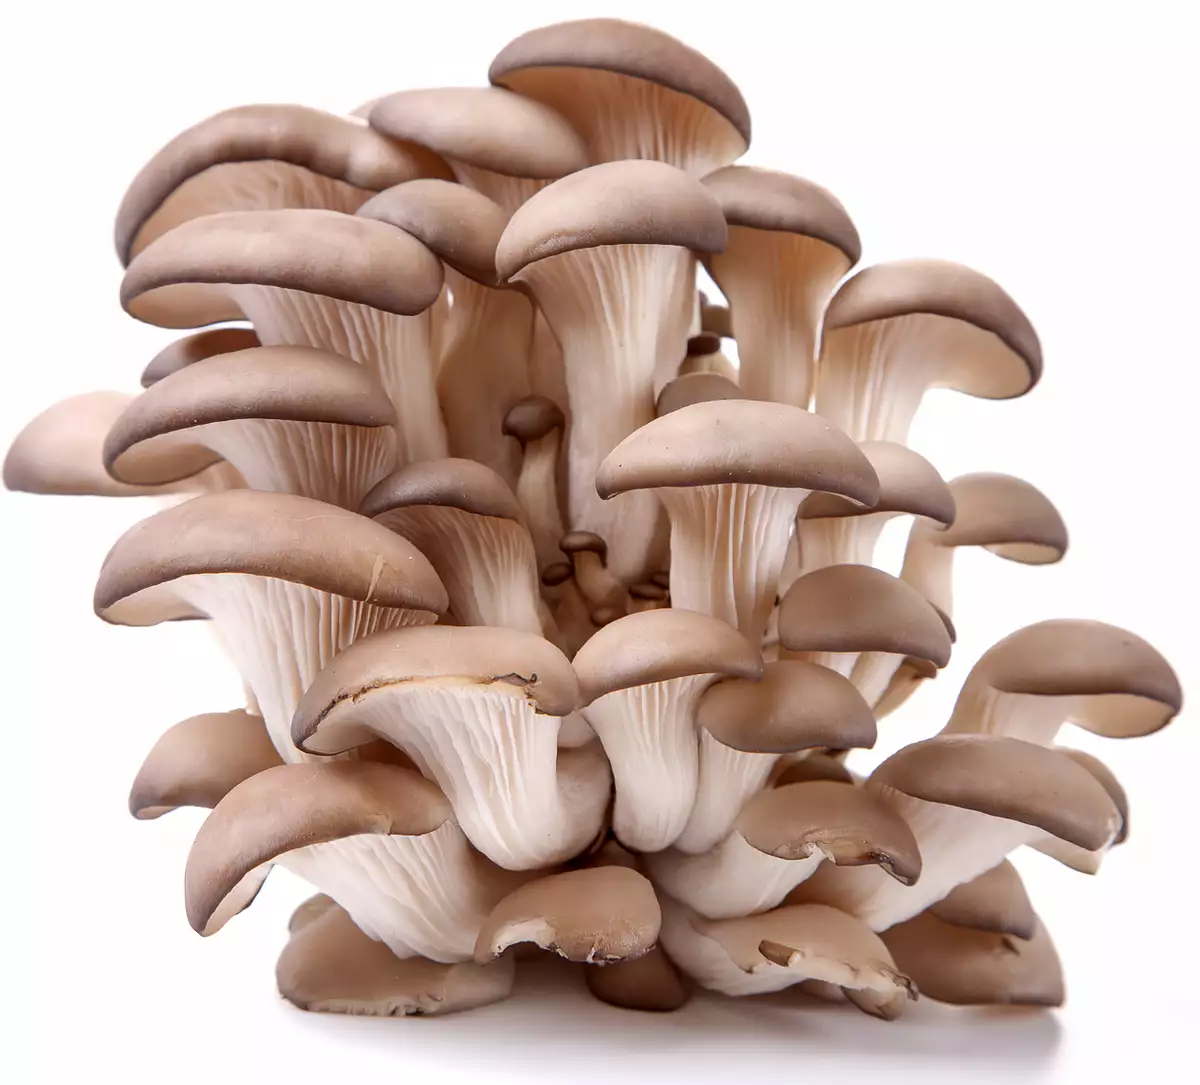 mushrooms, oyster